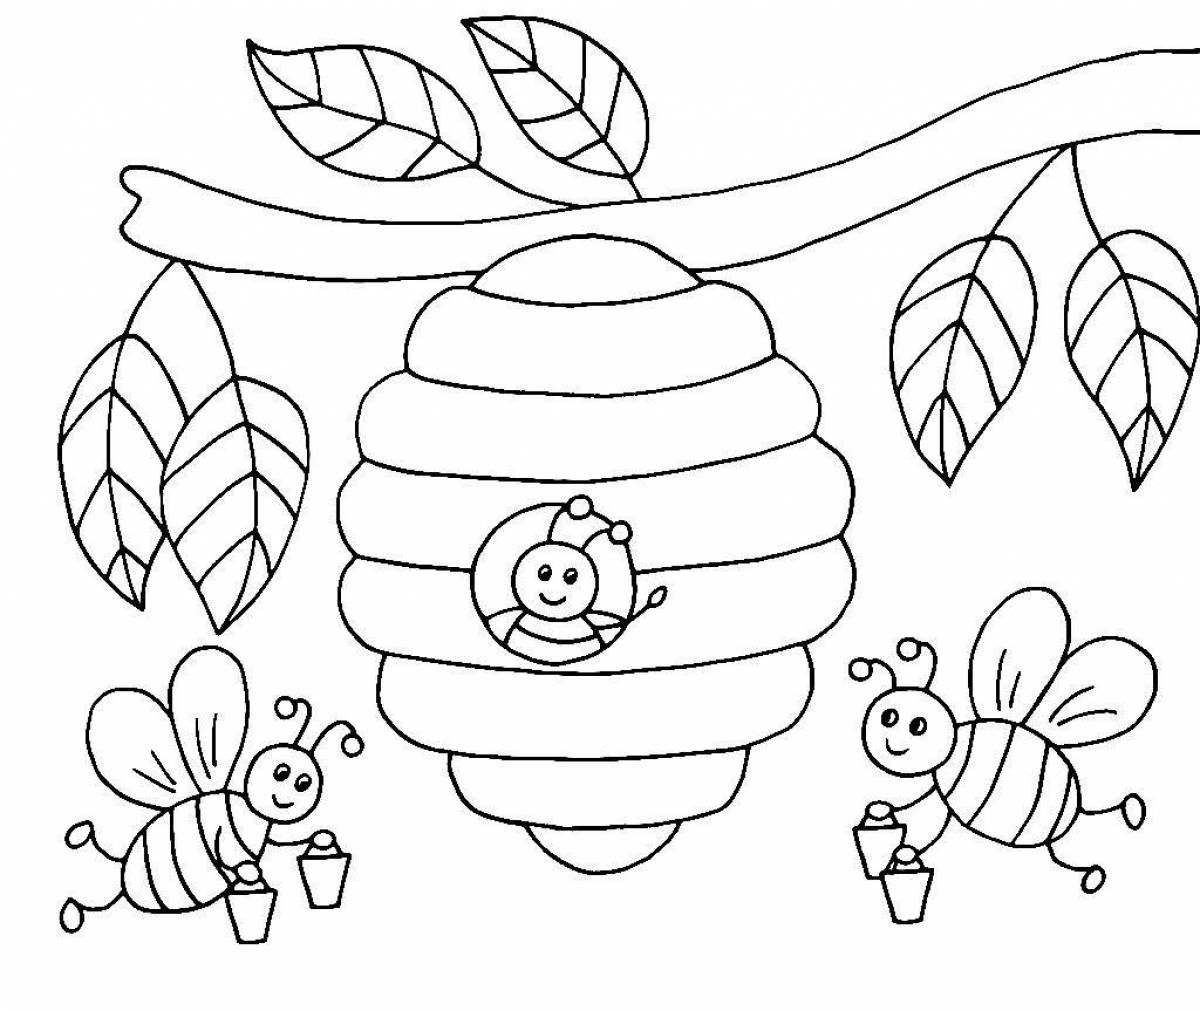 Fun beekeeper coloring book